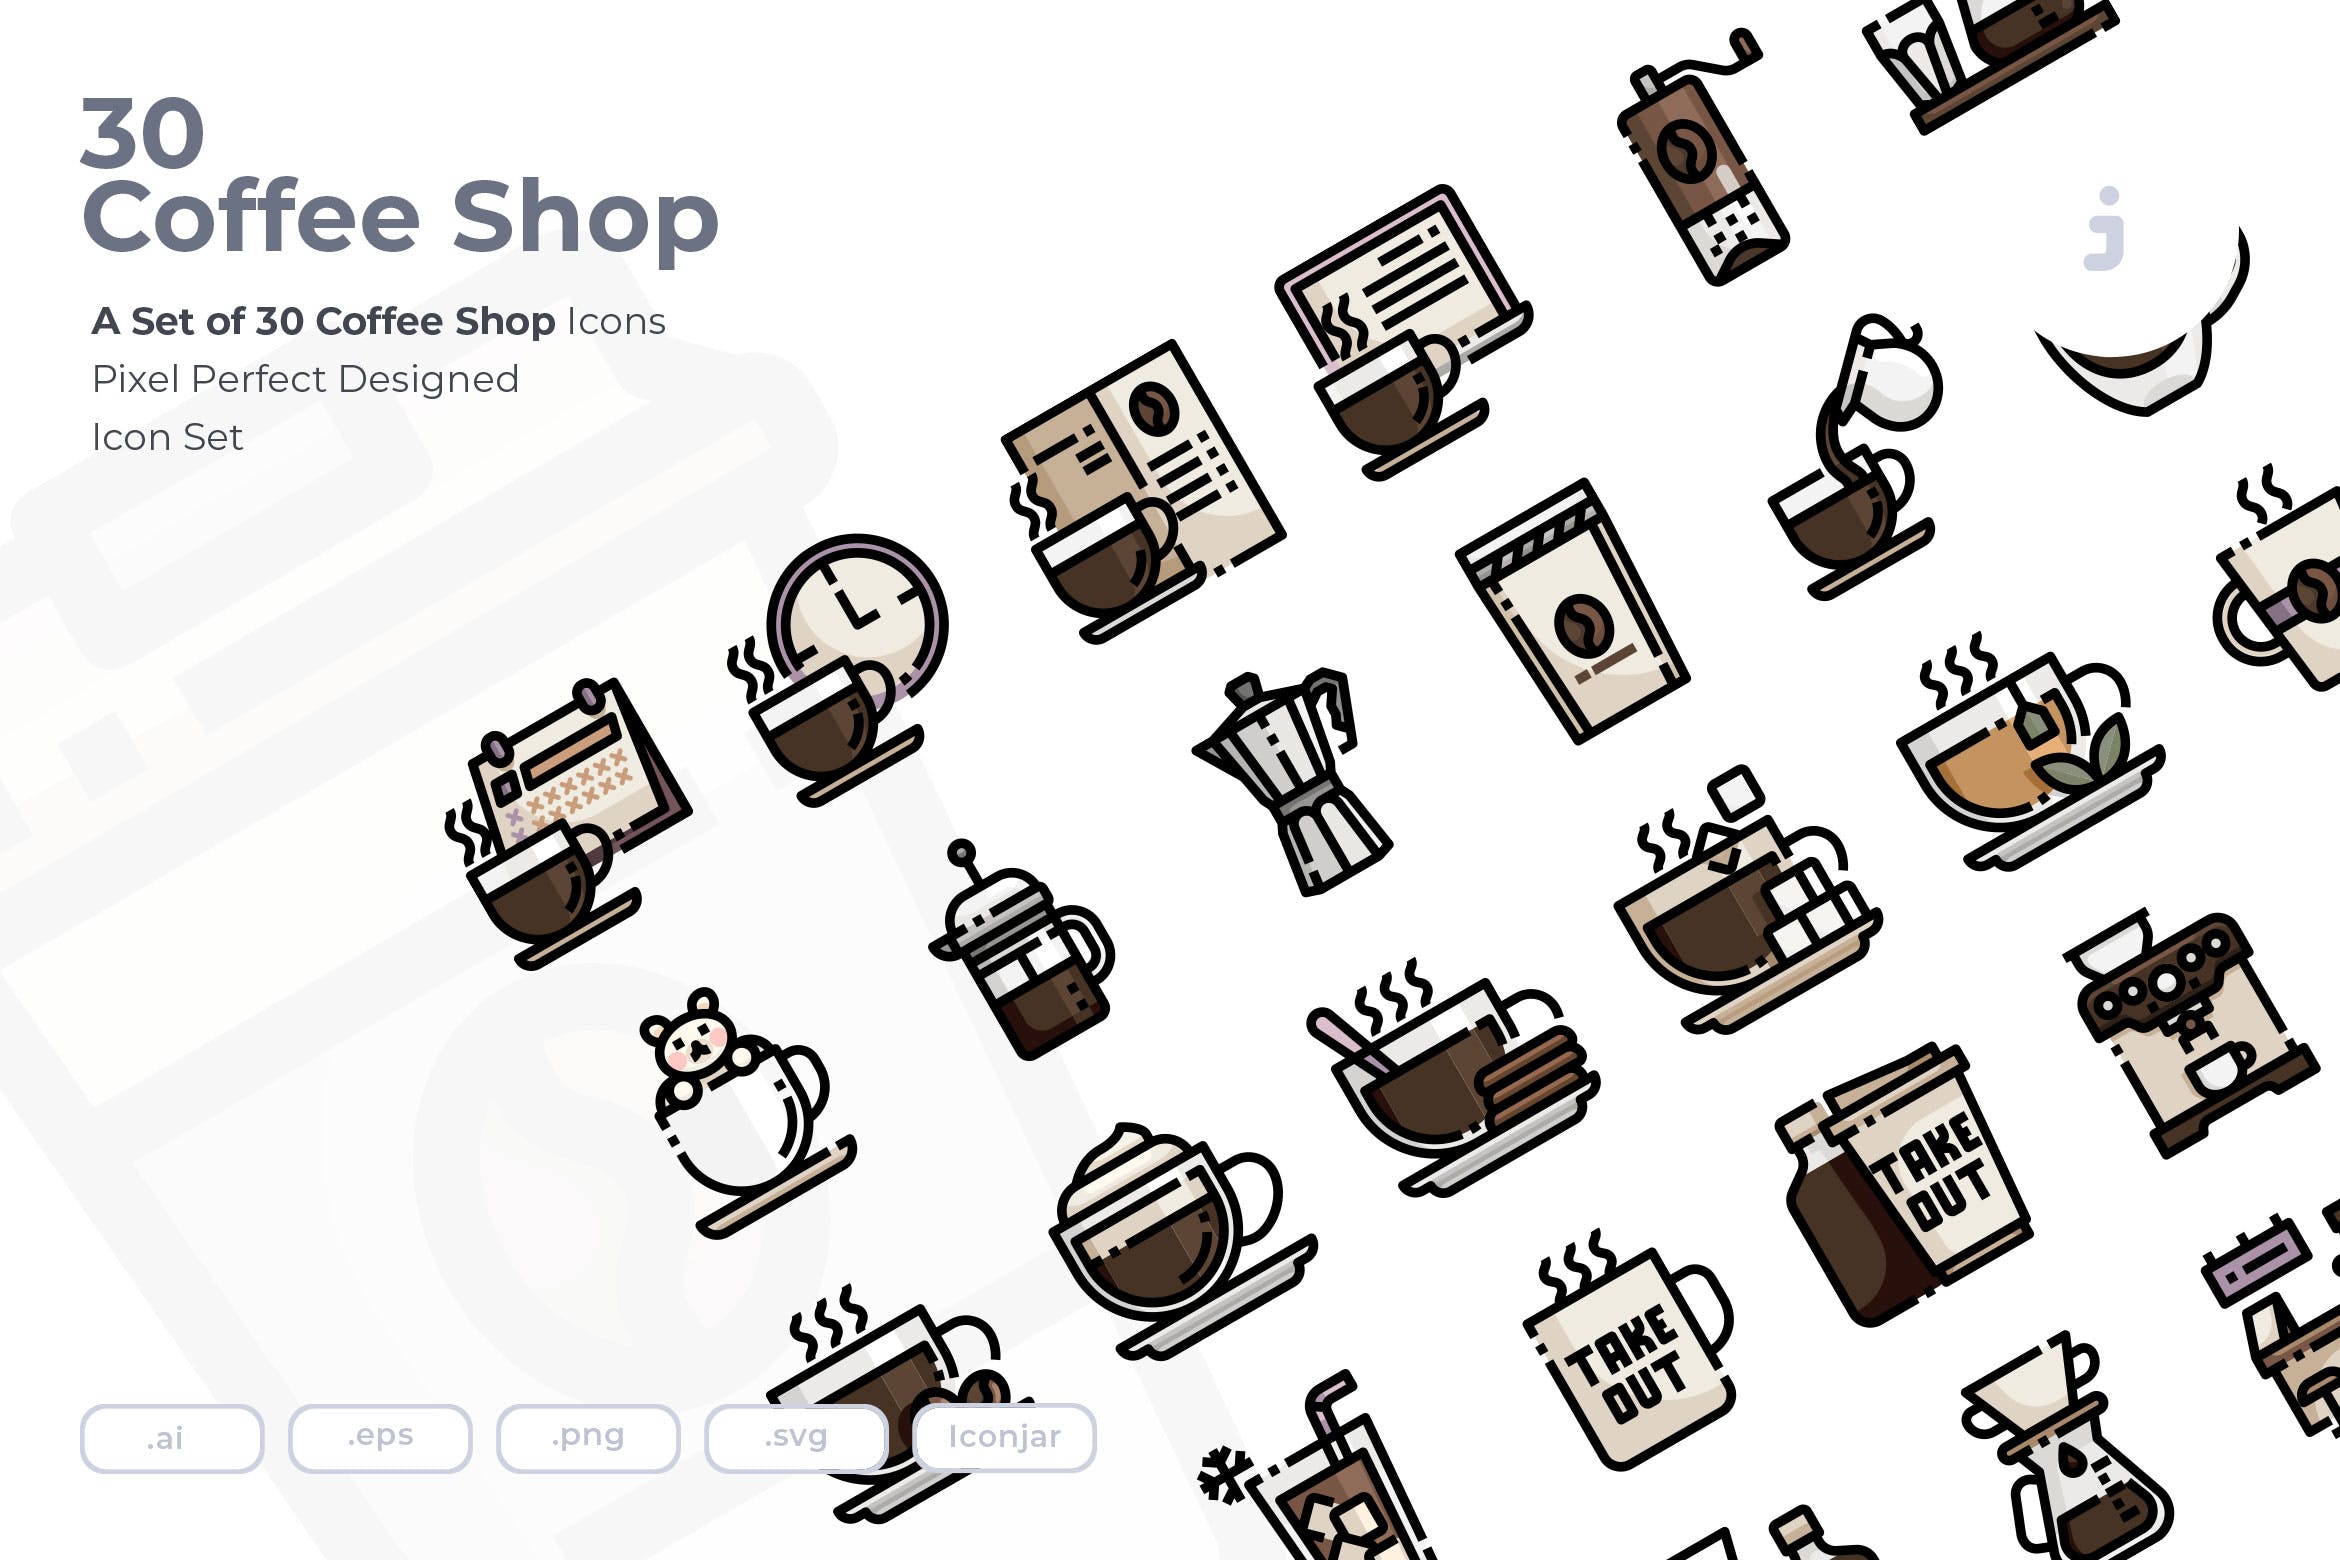 30枚咖啡/咖啡店矢量第一素材精选图标素材 30 Coffee Shop Icons插图